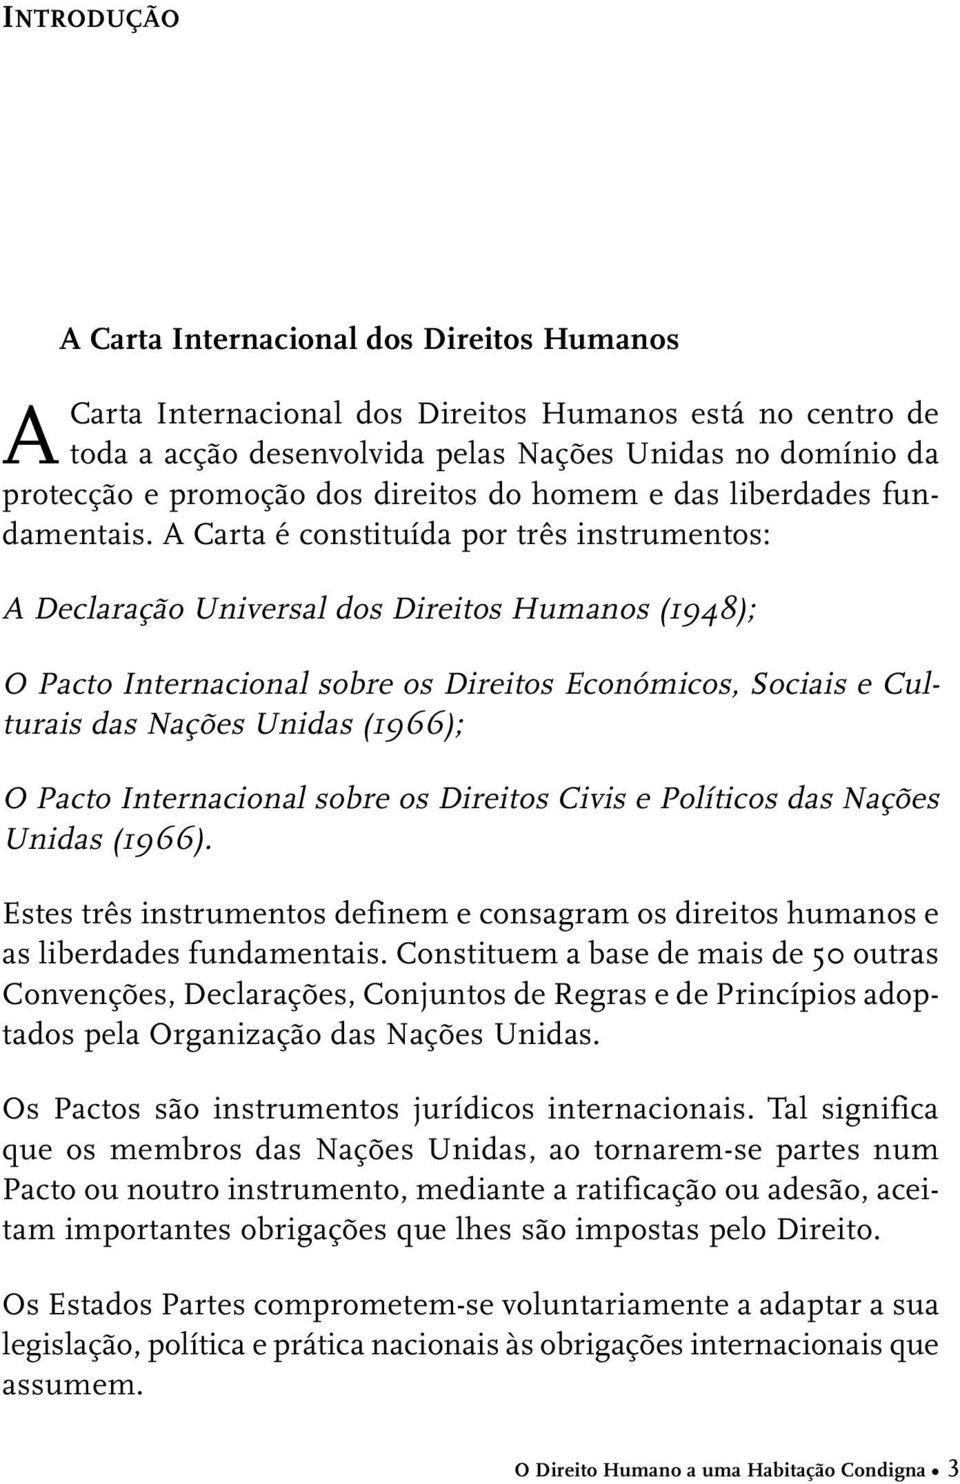 A Carta é constituída por três instrumentos: A Declaração Universal dos Direitos Humanos (1948); O Pacto Internacional sobre os Direitos Económicos, Sociais e Culturais das Nações Unidas (1966); O